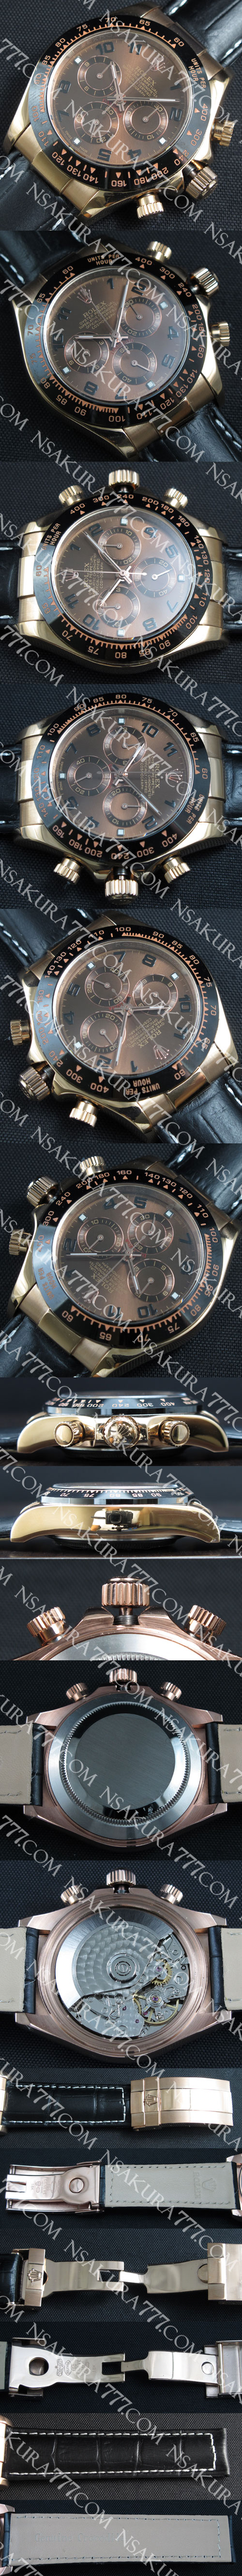 スーパーコピー時計ロレックス デイトナ Rolex7750搭載v2 (JF工場) - ウインドウを閉じる